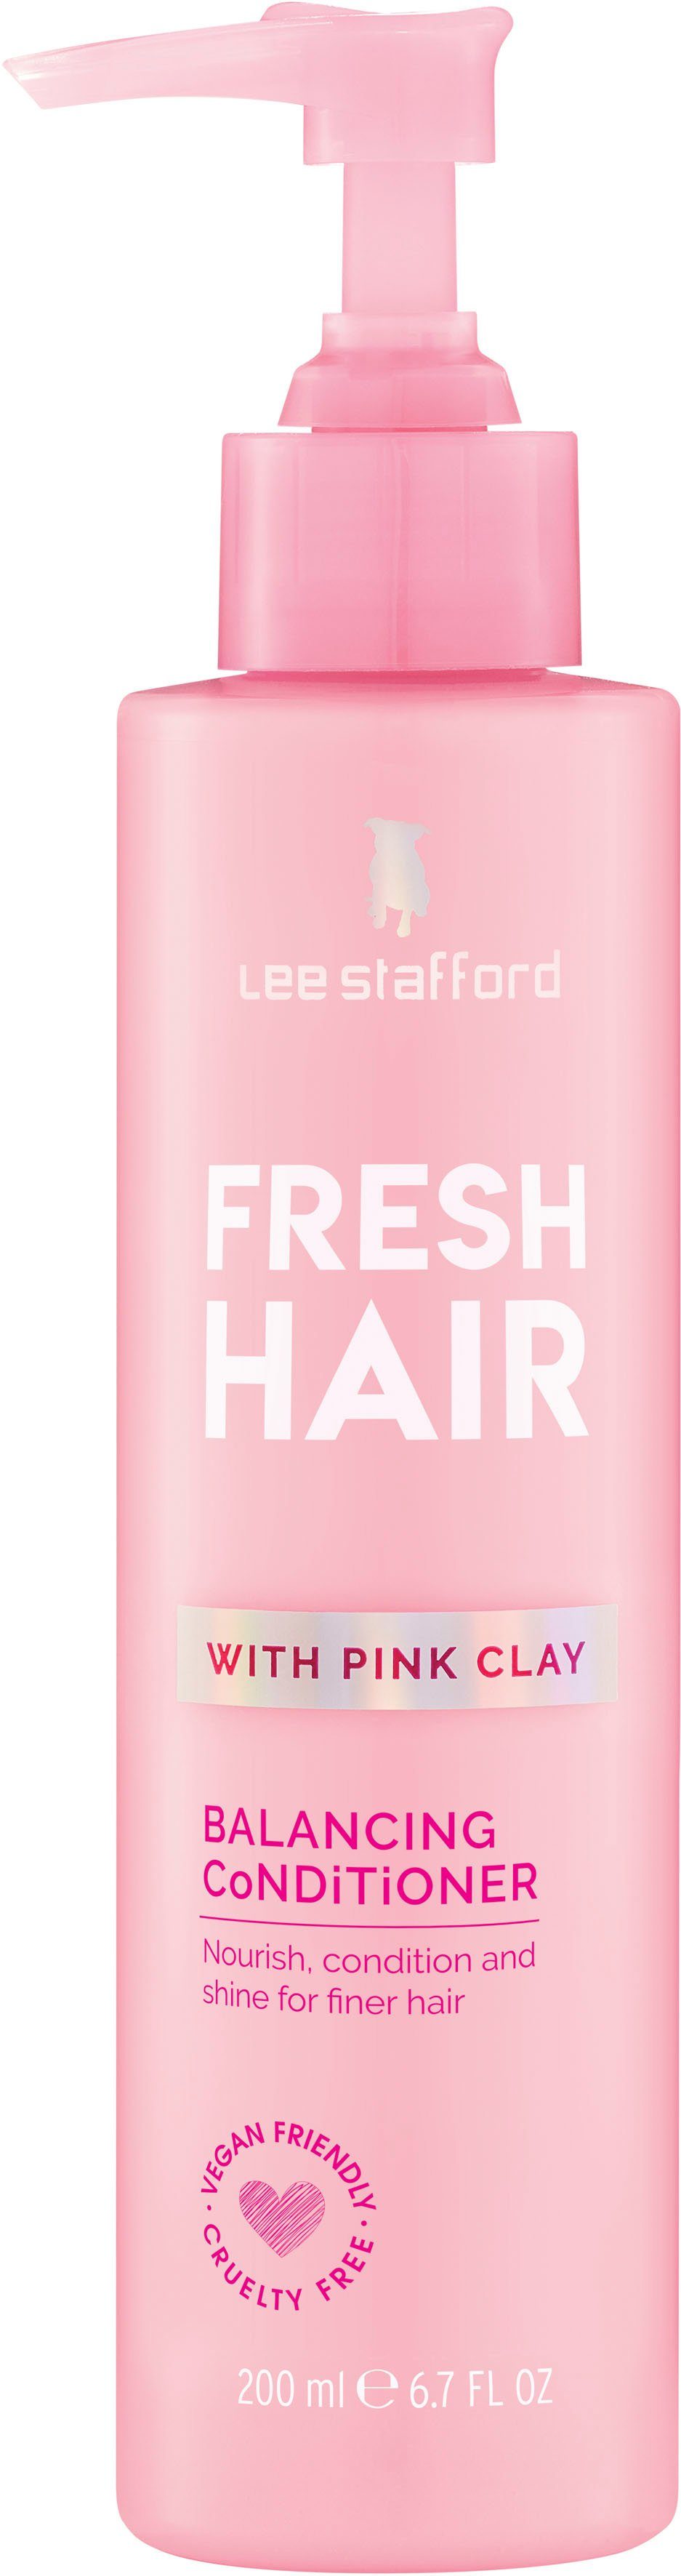 Damen Haarpflege Lee Stafford Haarserum Fresh Hair Conditioner